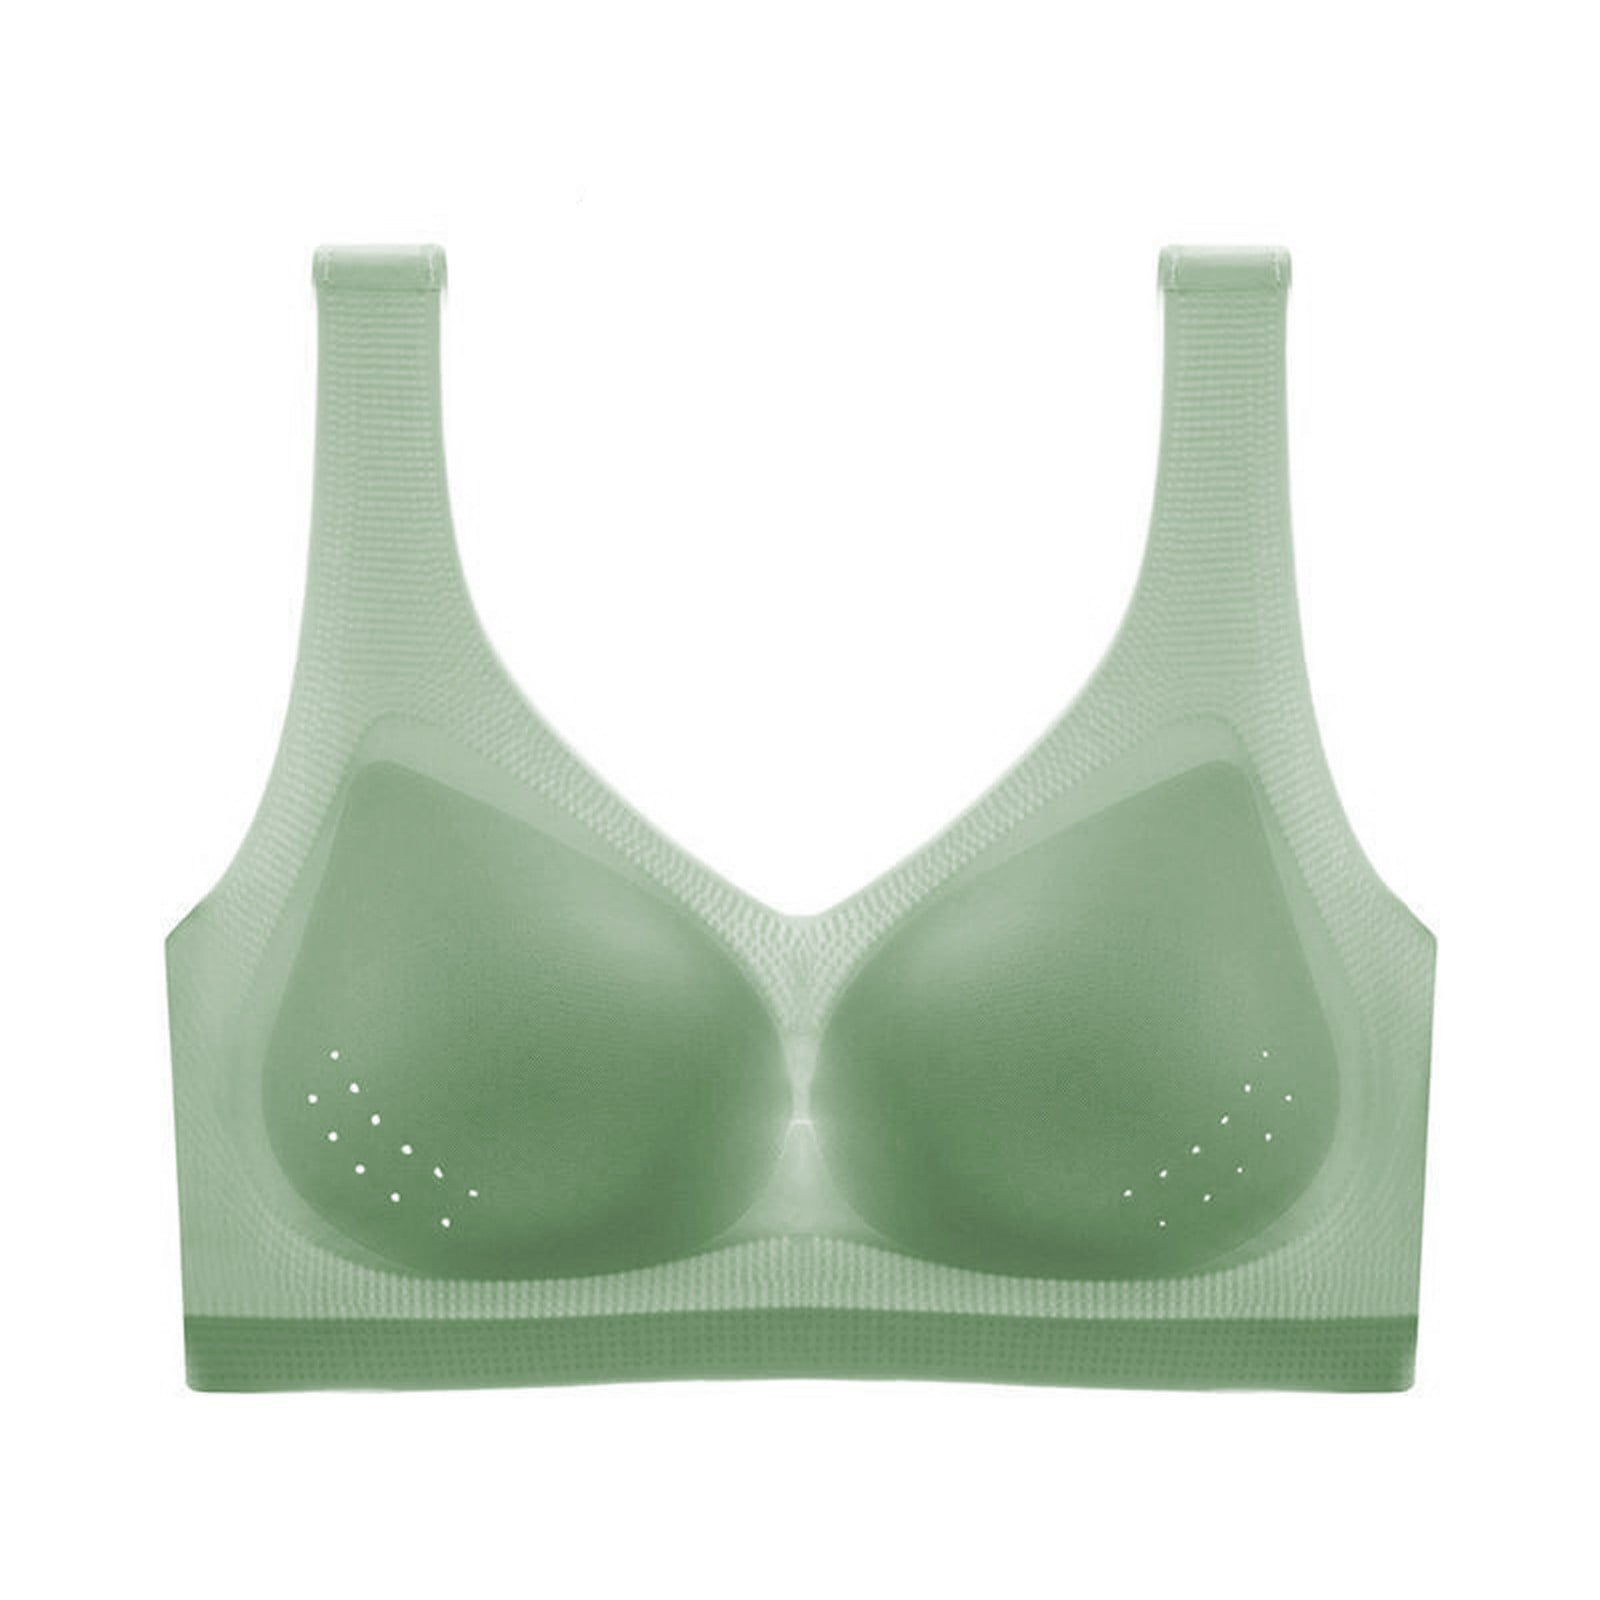 Nanoedge Women's Light Support Seamless Sport Bra Wireless Yoga Bralette  Top (28 Till 34) Padded Bra Pack of 1 (Green)